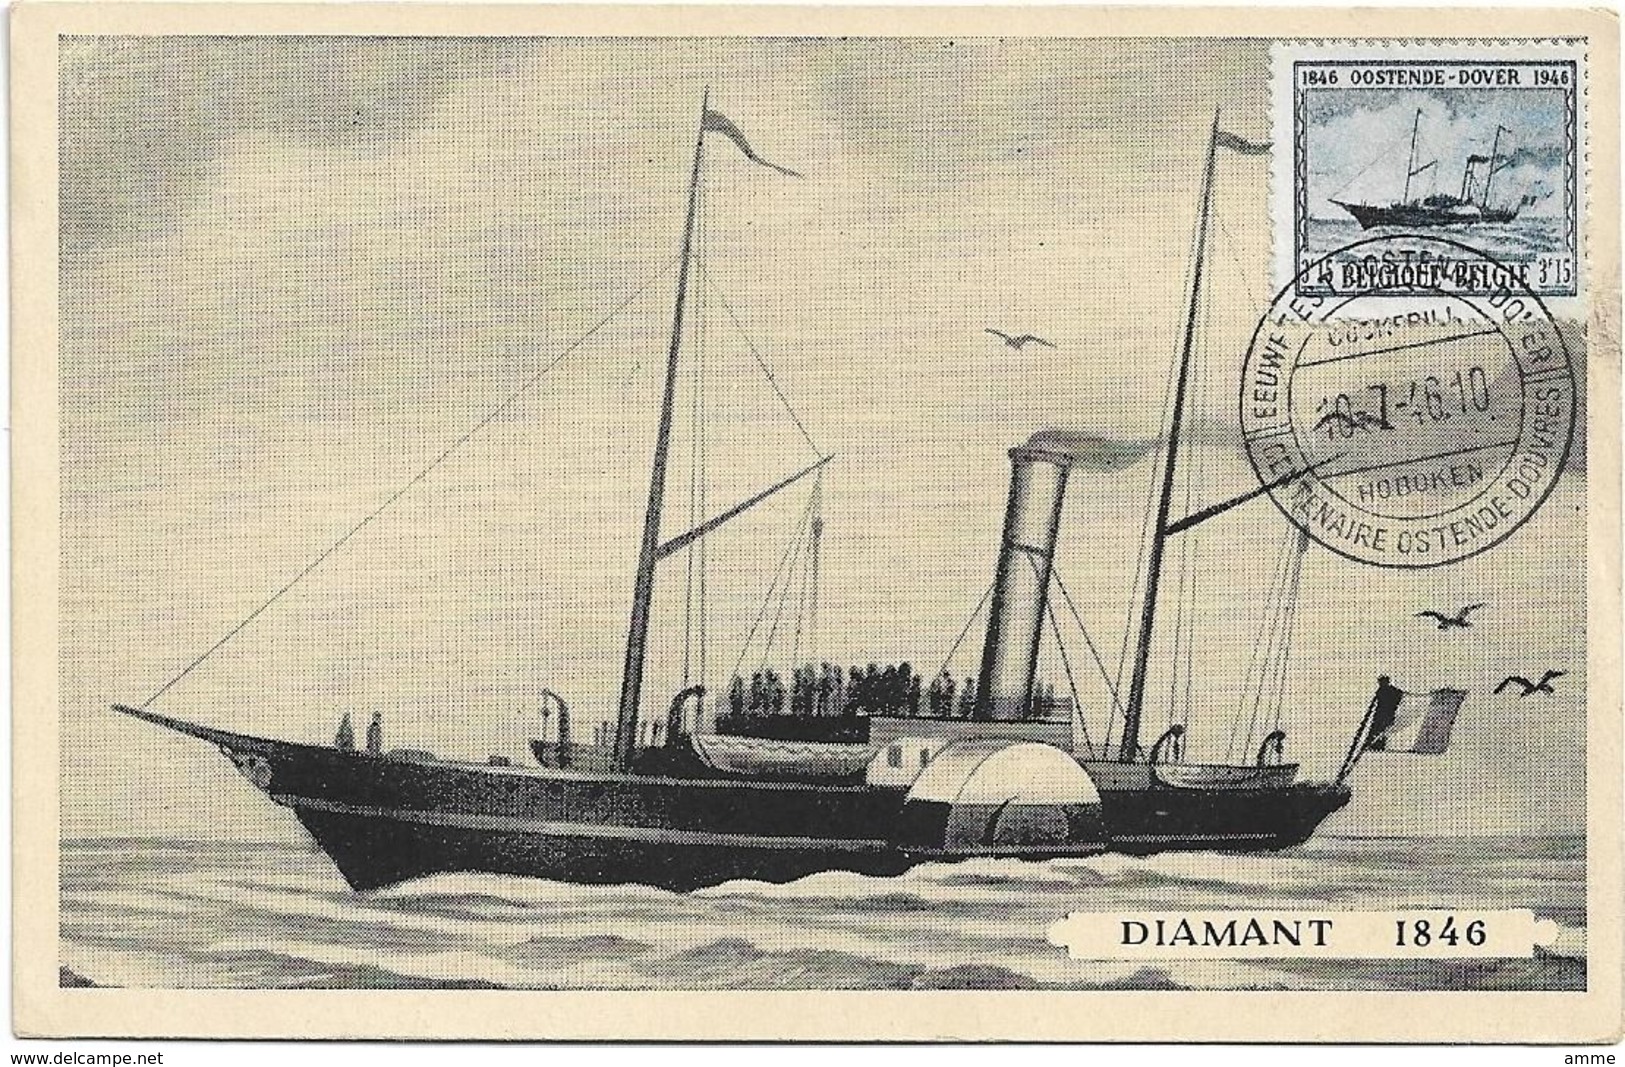 Oostende  *  Eeuwfeest - Centenaire Oostende - Dover 1946  ( Diamant 1846 ) - Tarjetas Transatlánticos